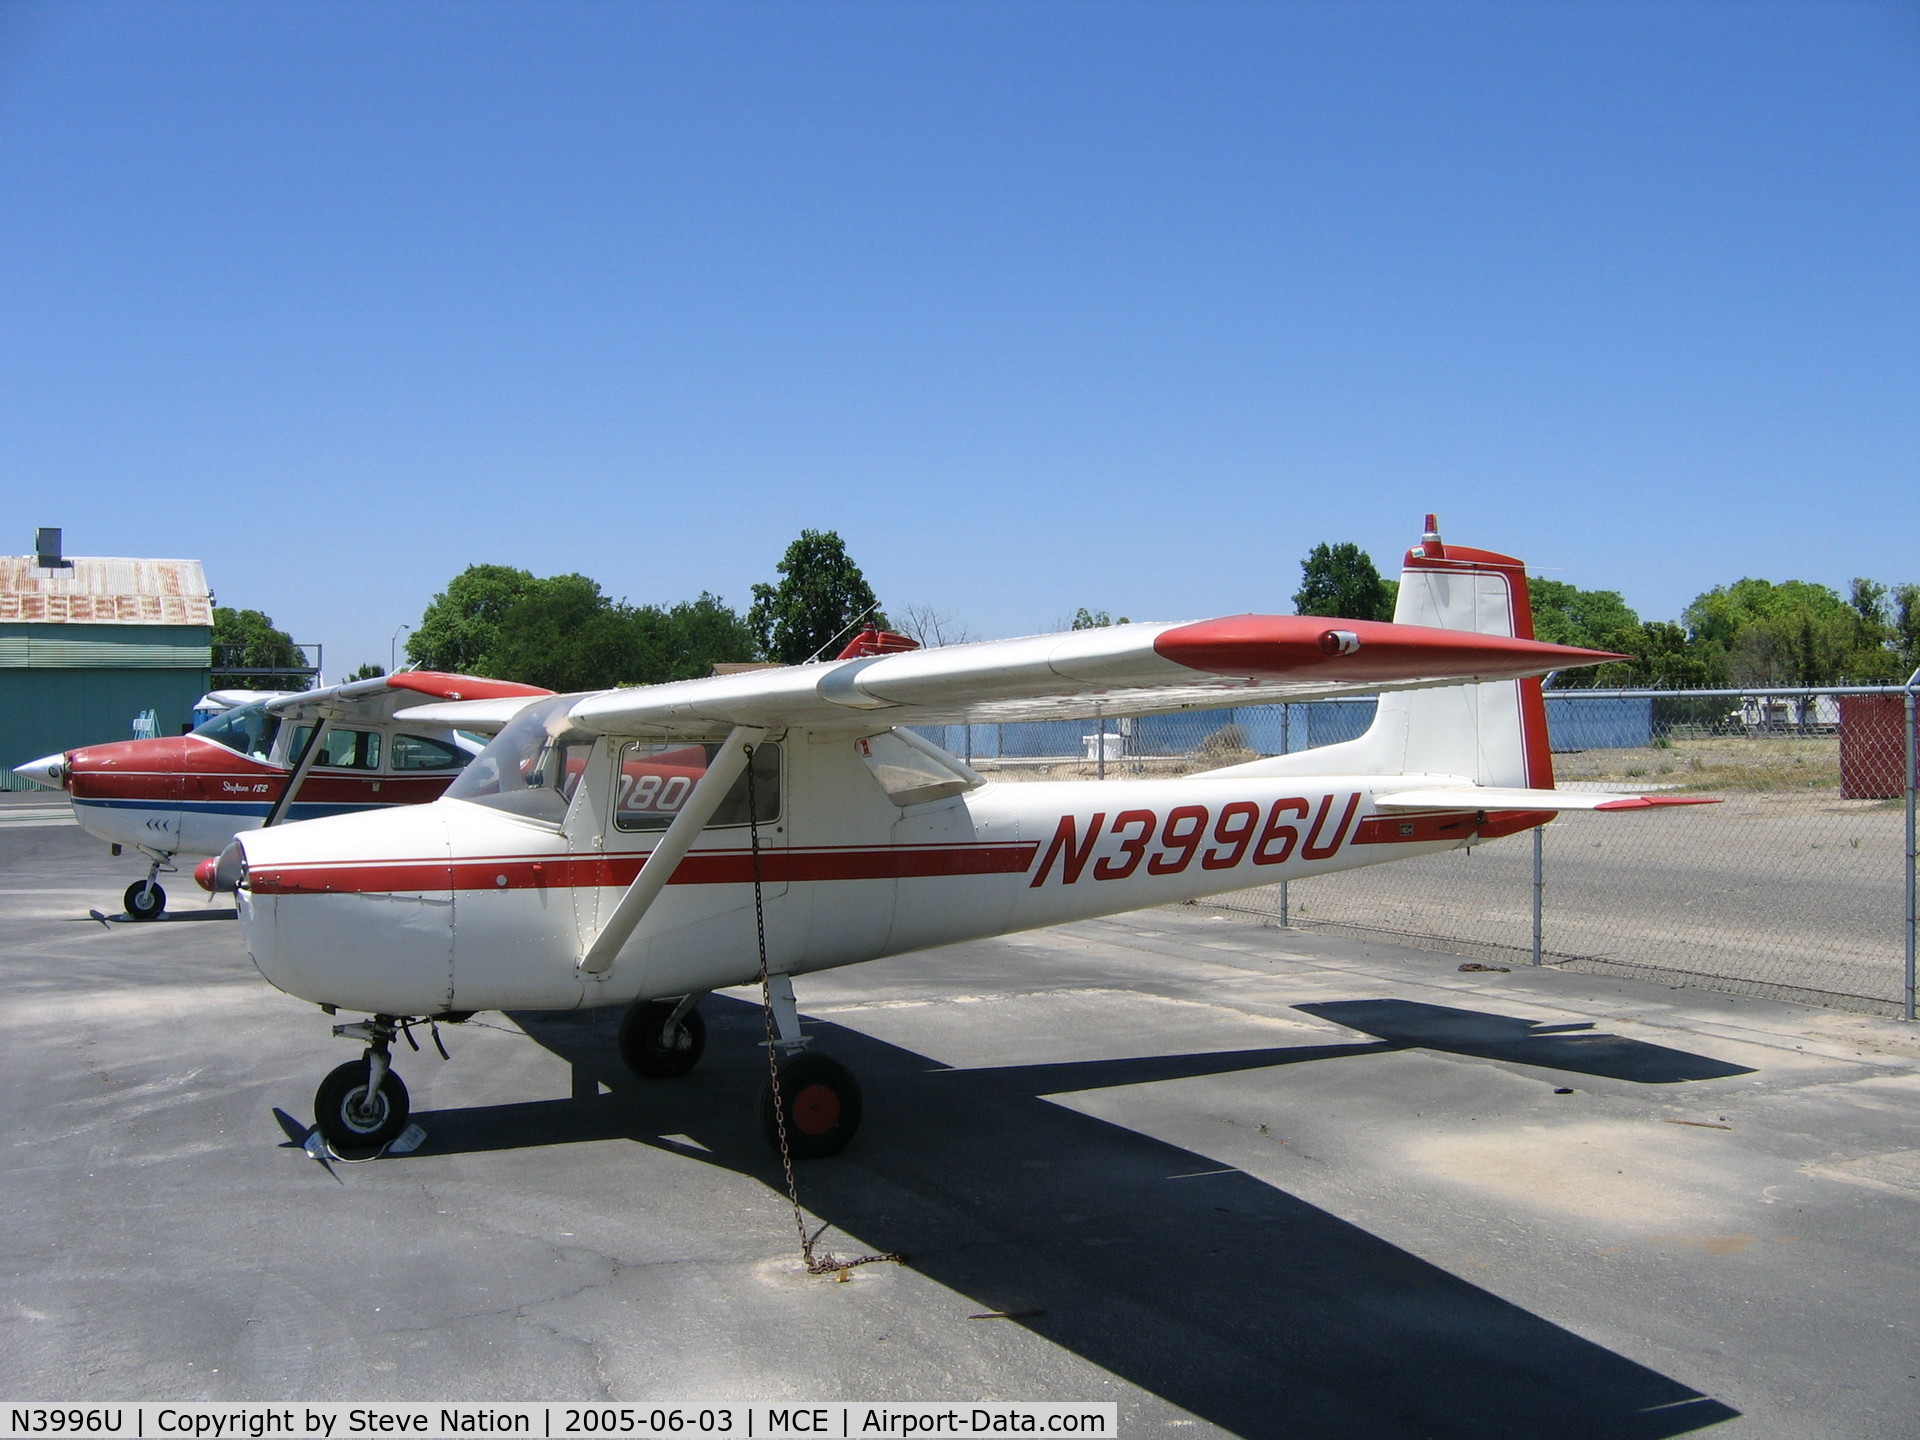 N3996U, 1965 Cessna 150E C/N 15061396, Albert Giguere's 1965 Cessna 150E at Merced, CA